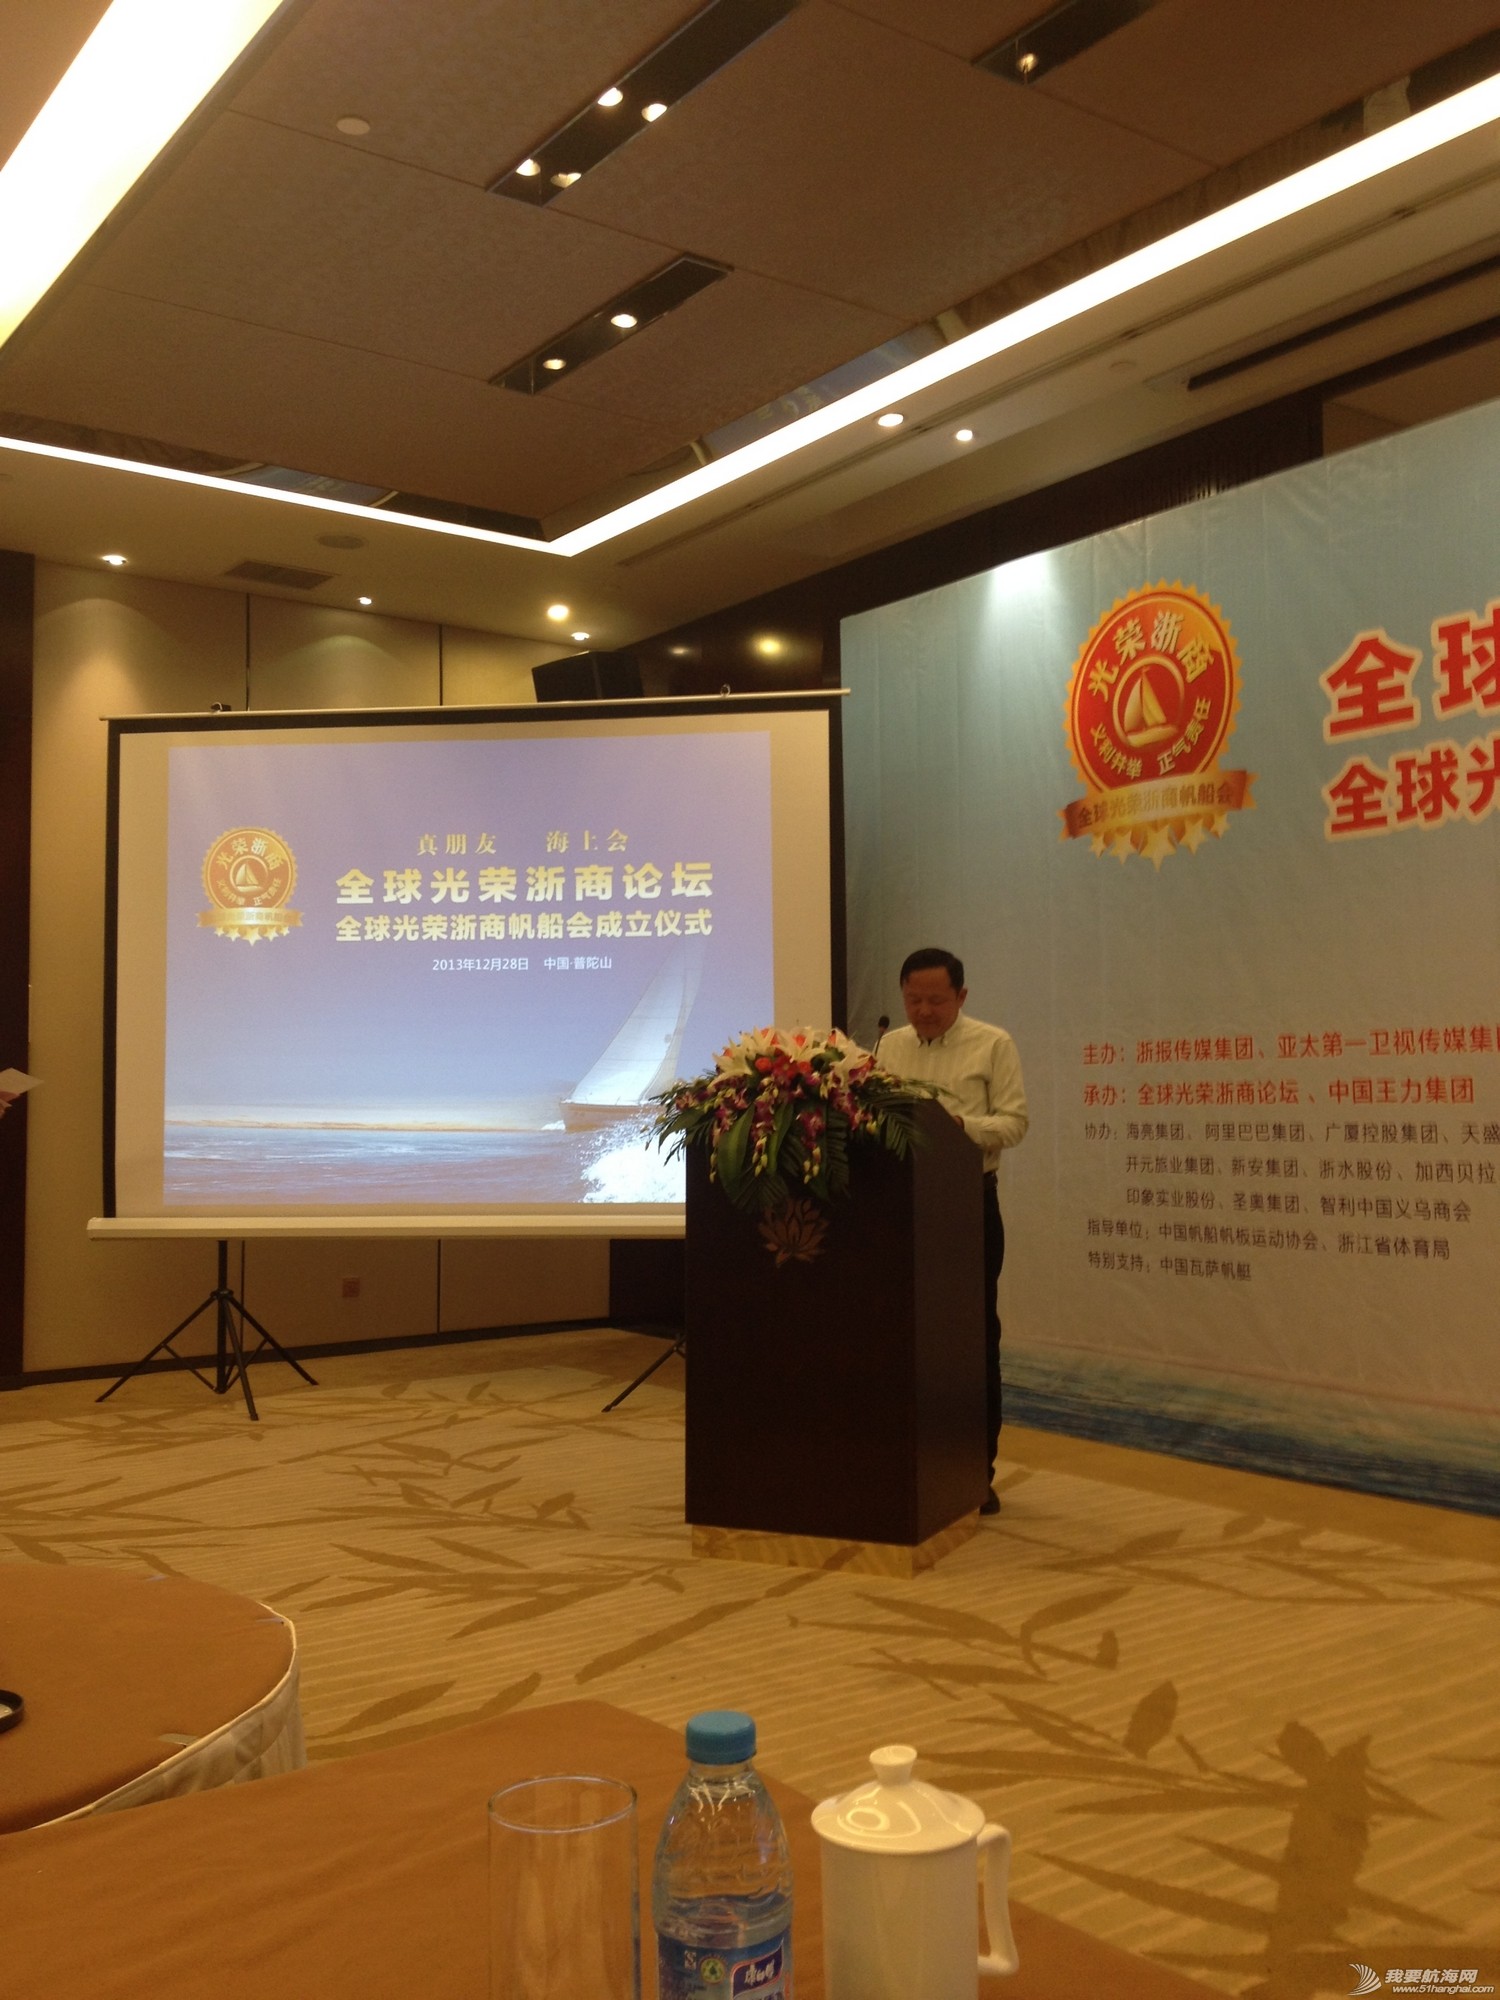 全球光荣浙商帆船会秘书长张新江宣读第一批会员名单及2014年帆船会工作计划